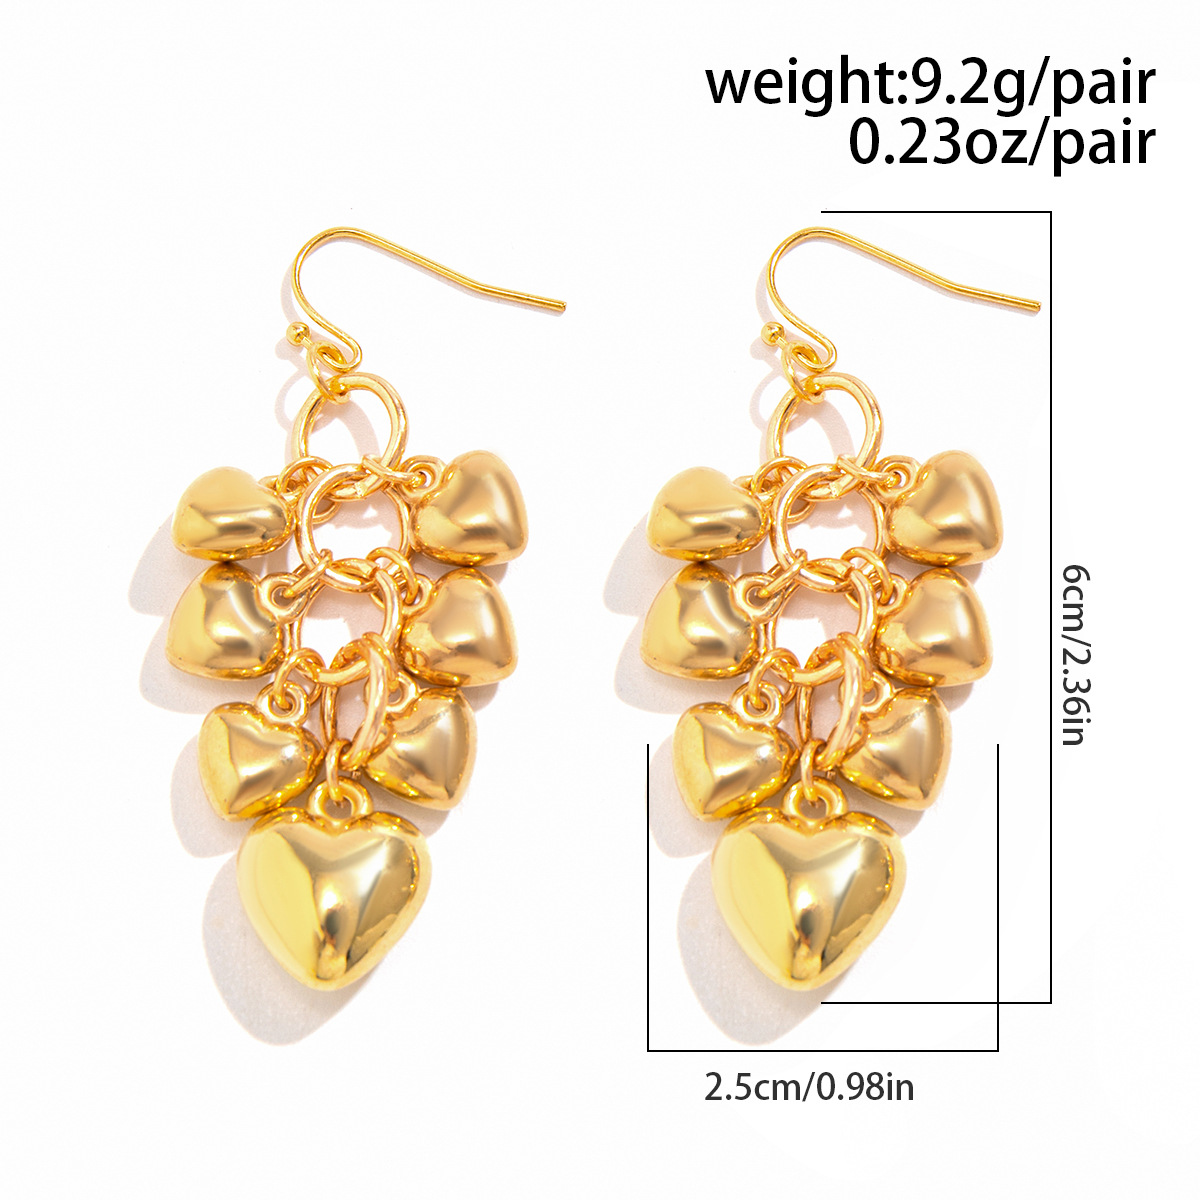 5:Earrings gold